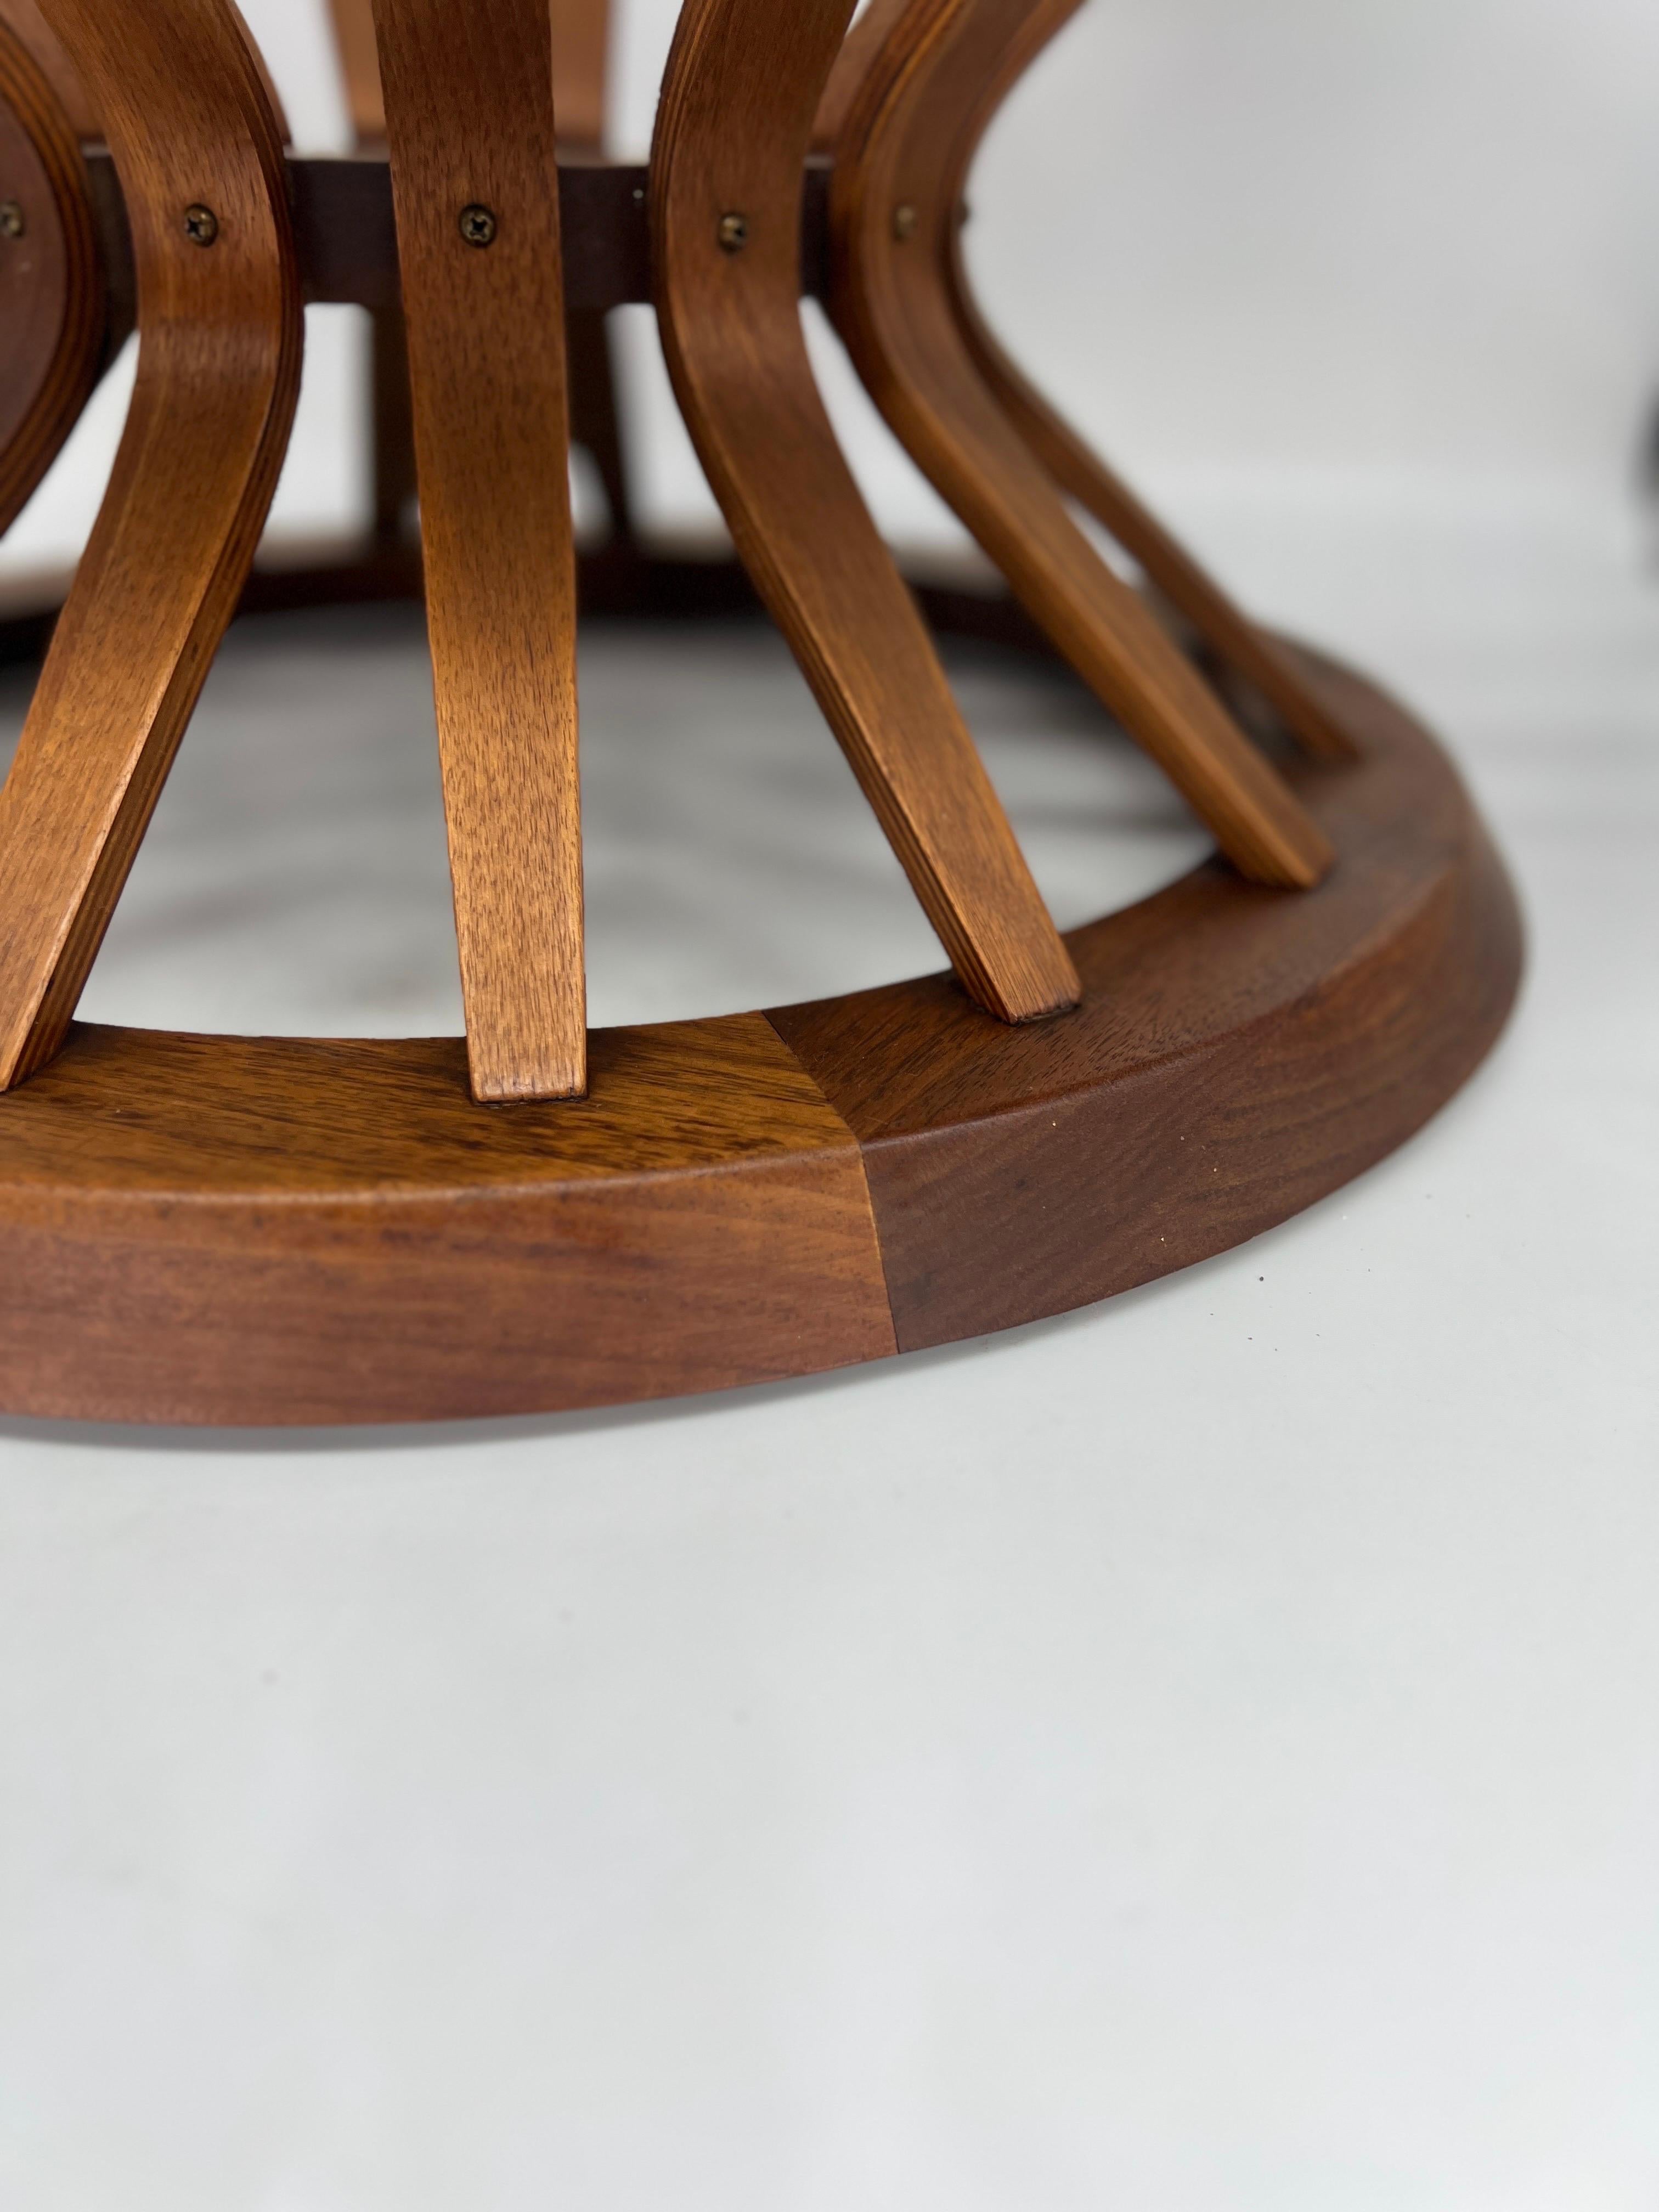 Der Sheaf of Wheat Coffee Table, der in den 1960er Jahren von Edward Wormley für Dunbar entworfen wurde, ist ein beeindruckendes Möbelstück aus der Mitte des Jahrhunderts. Dieser mit außergewöhnlicher Liebe zum Detail gefertigte Couchtisch besticht